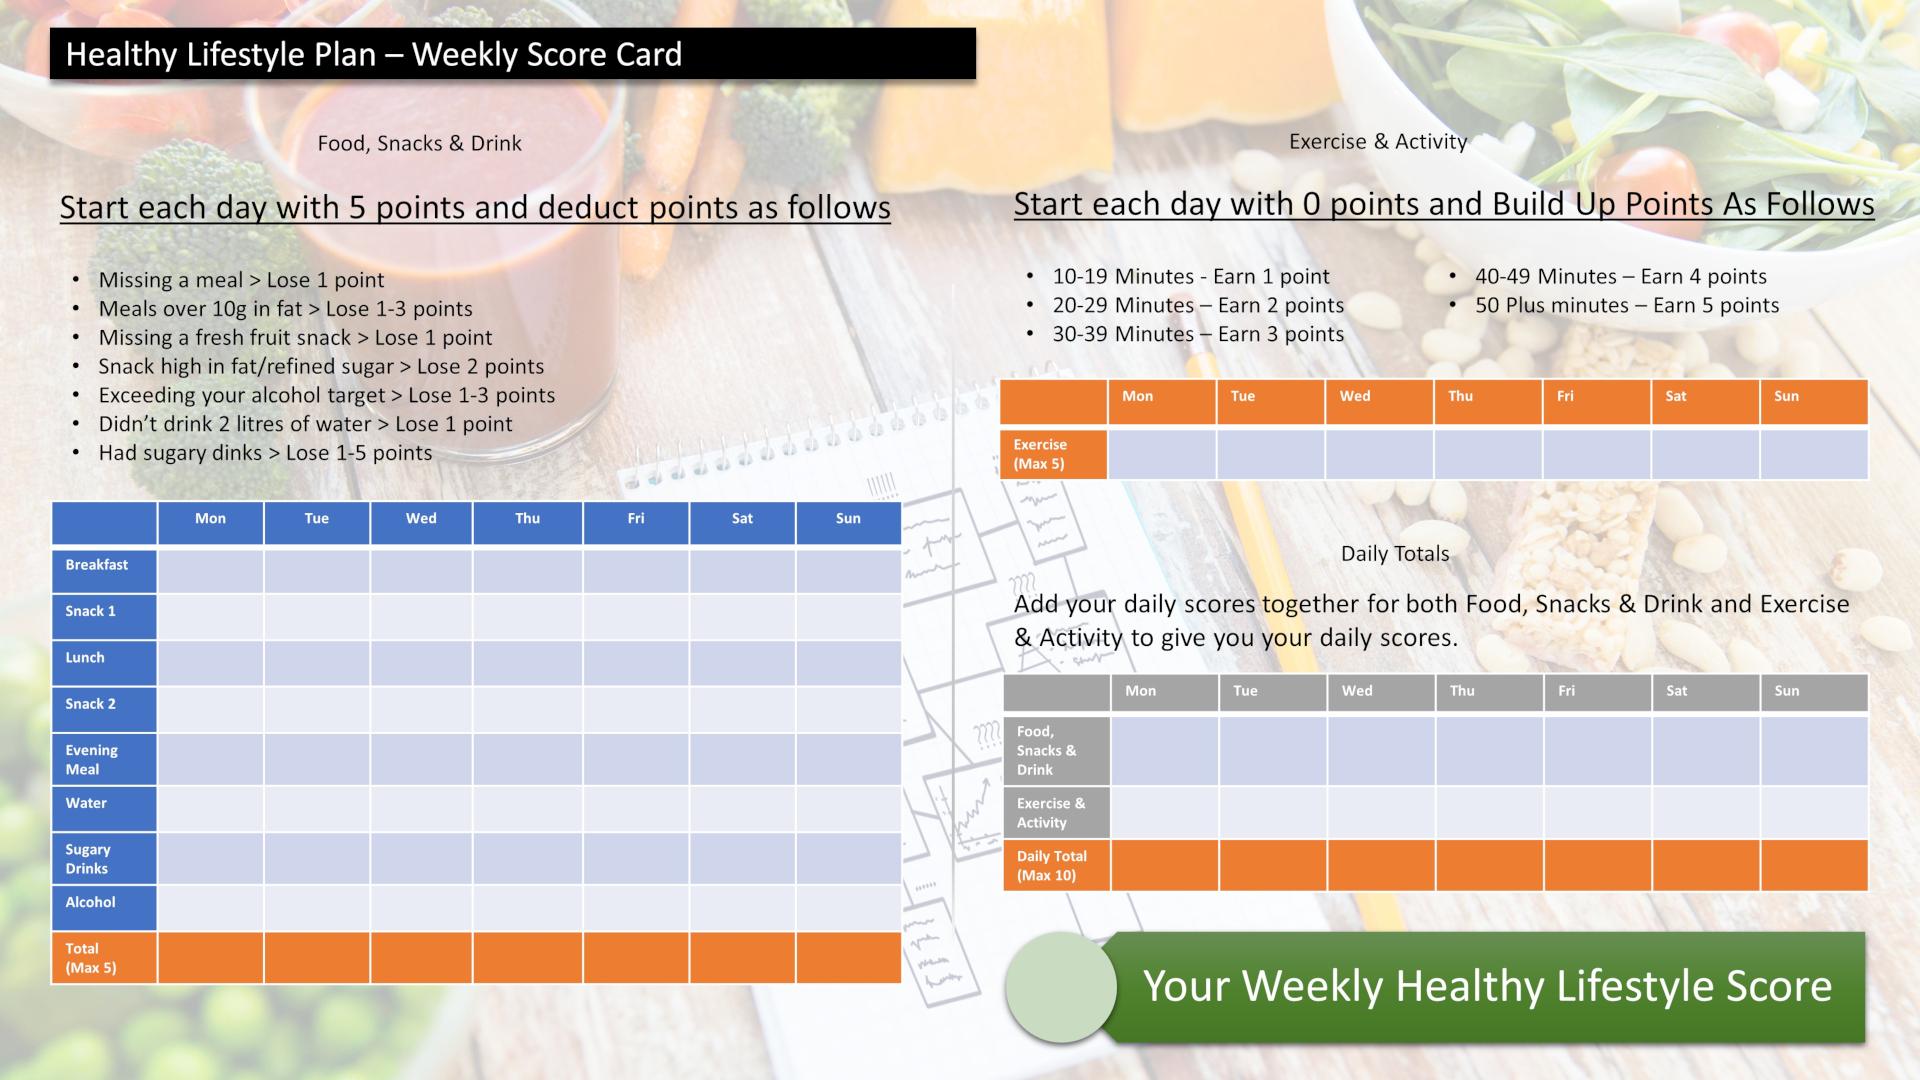 The Healthy Lifestyle Plan Scorecard